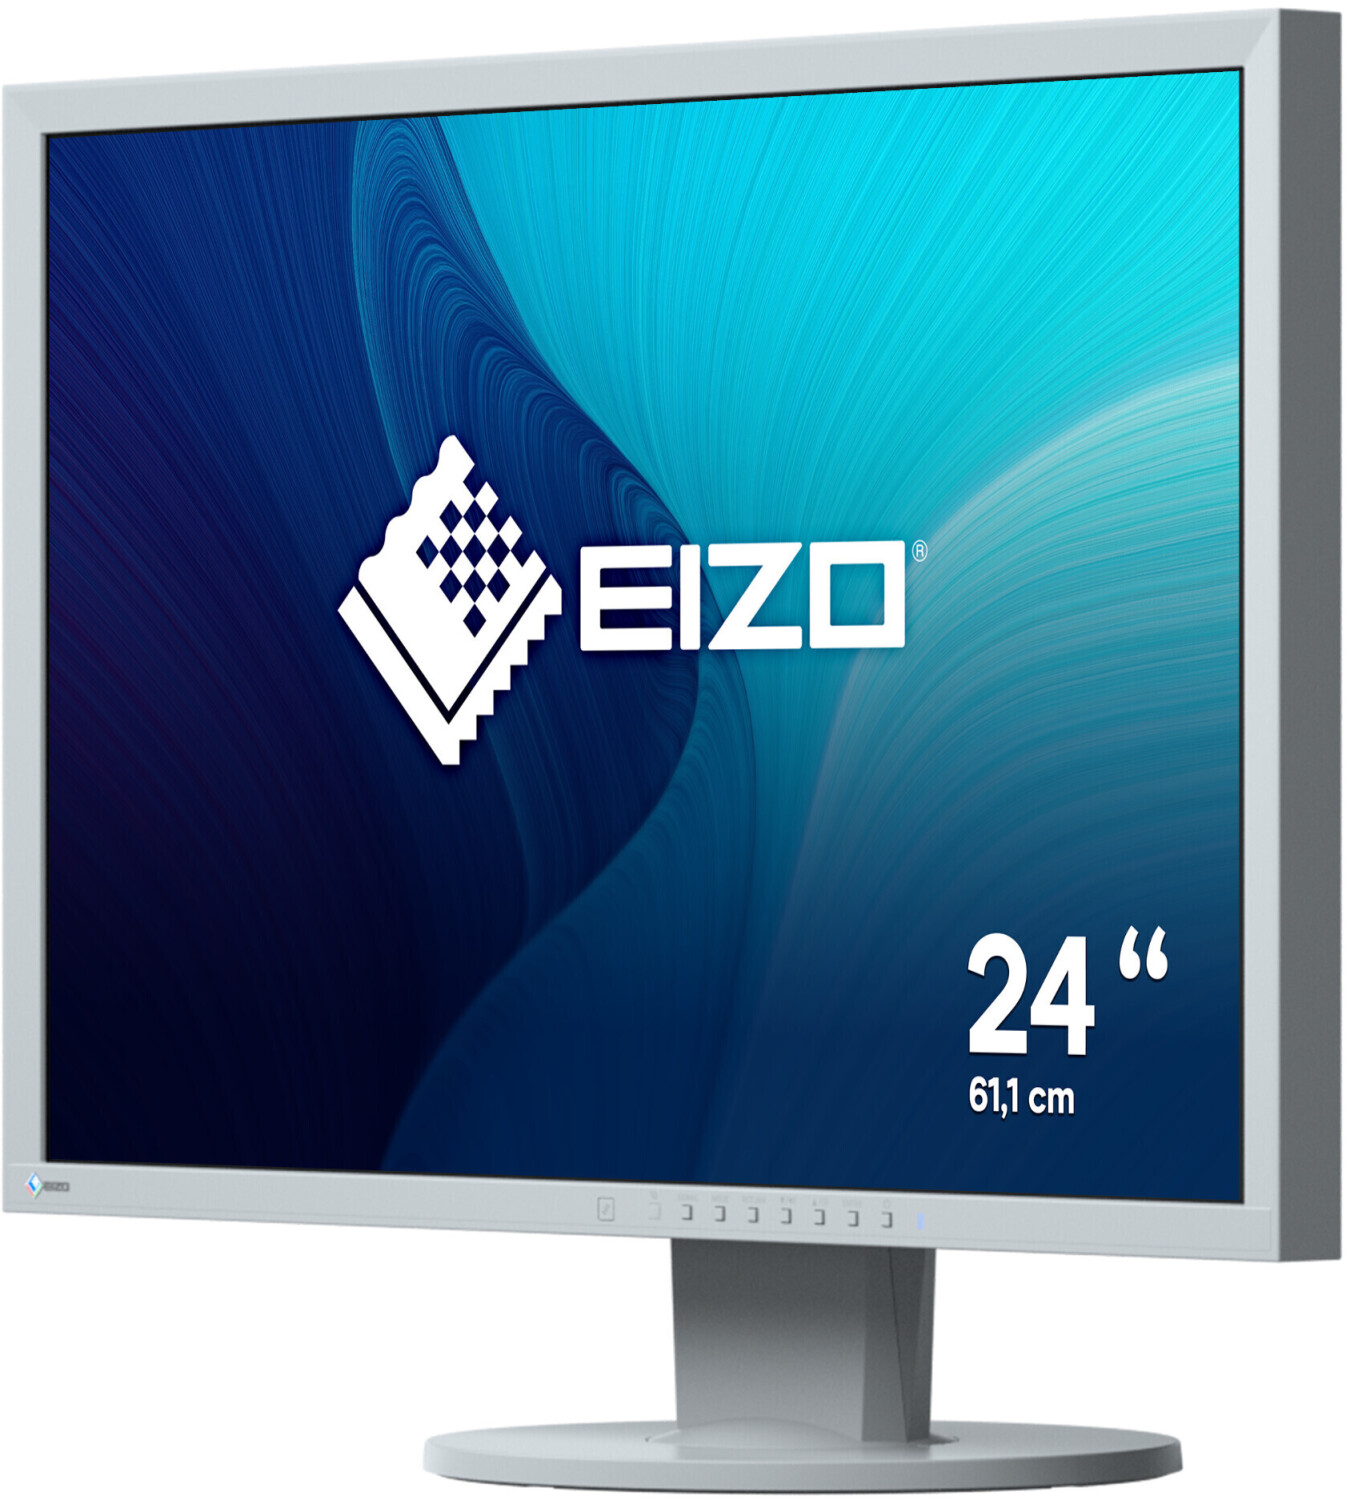 EIZO EV2430-GY au meilleur prix sur idealo.fr